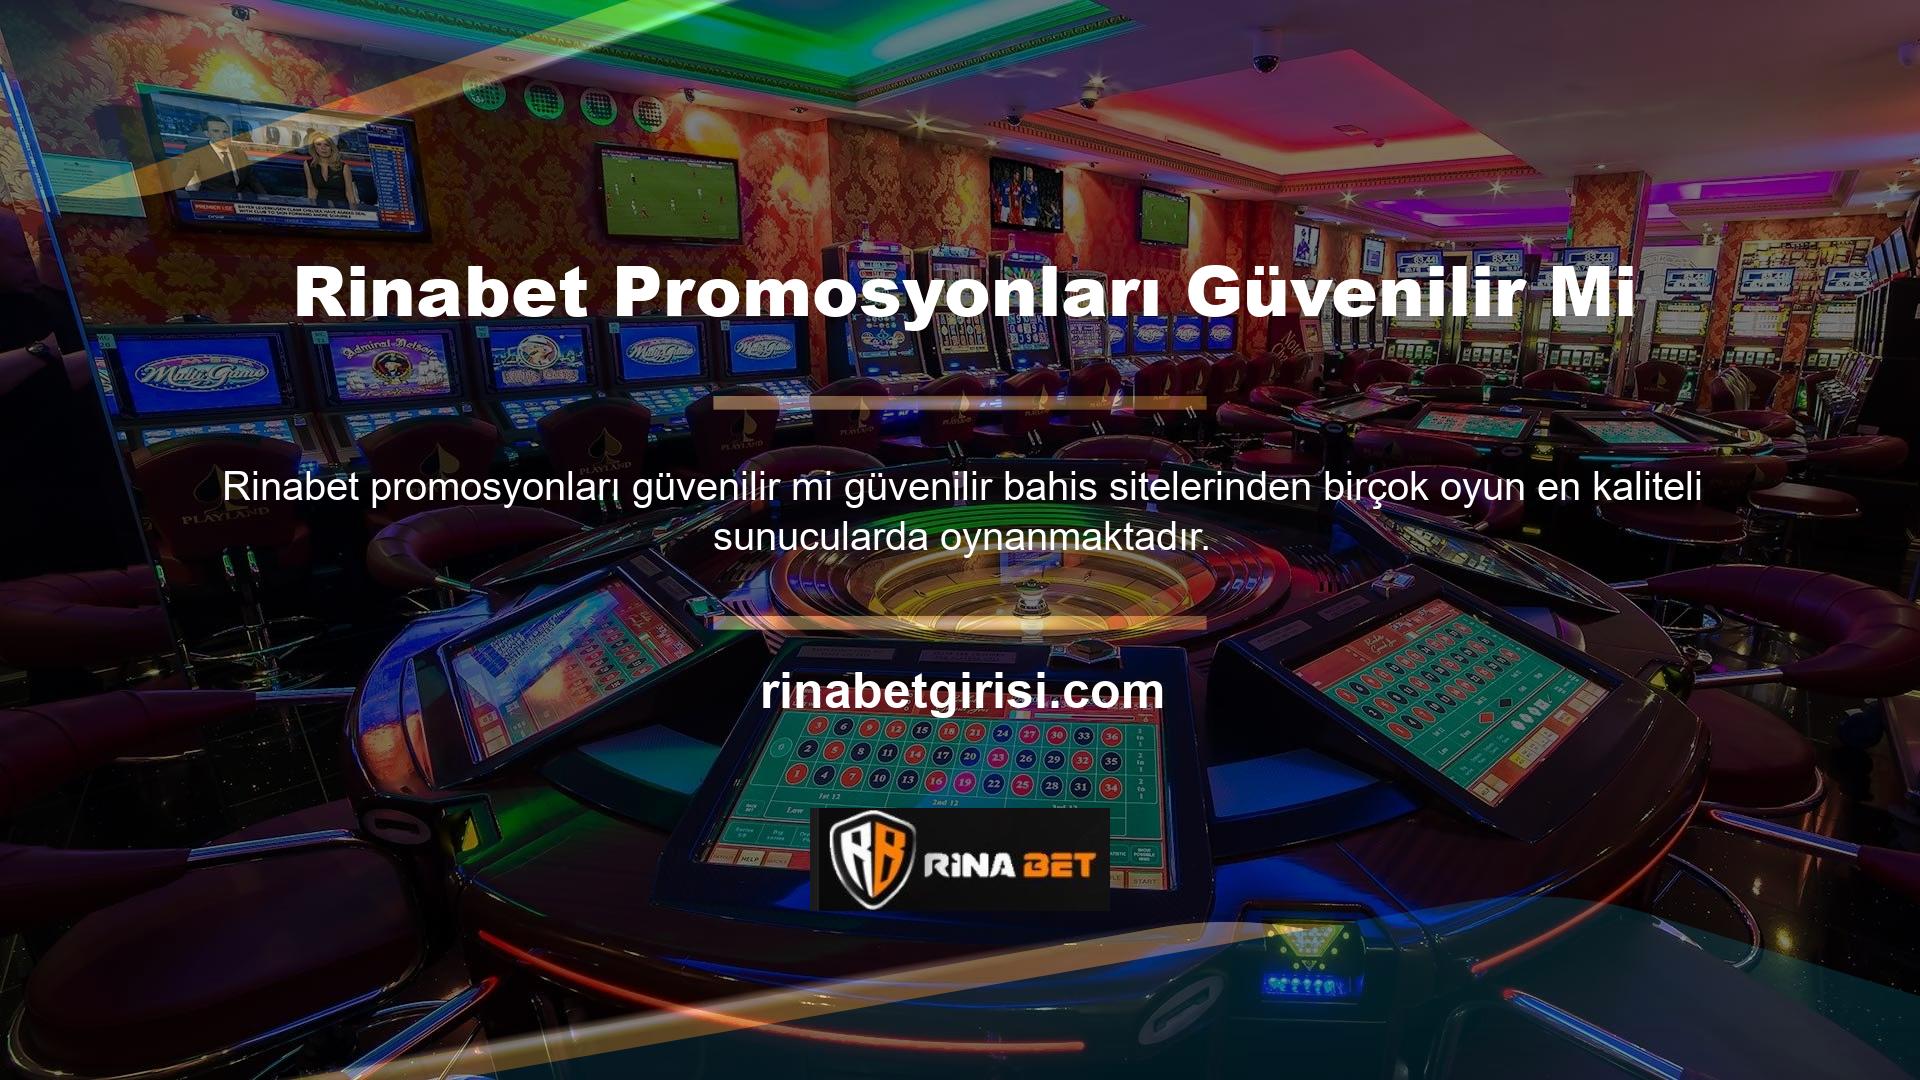 Bildiğiniz üzere Türk casino sektöründeki hukuk büroları adres değişikliği ve engelleme olmaksızın BTK'ya hizmet verebilmektedir